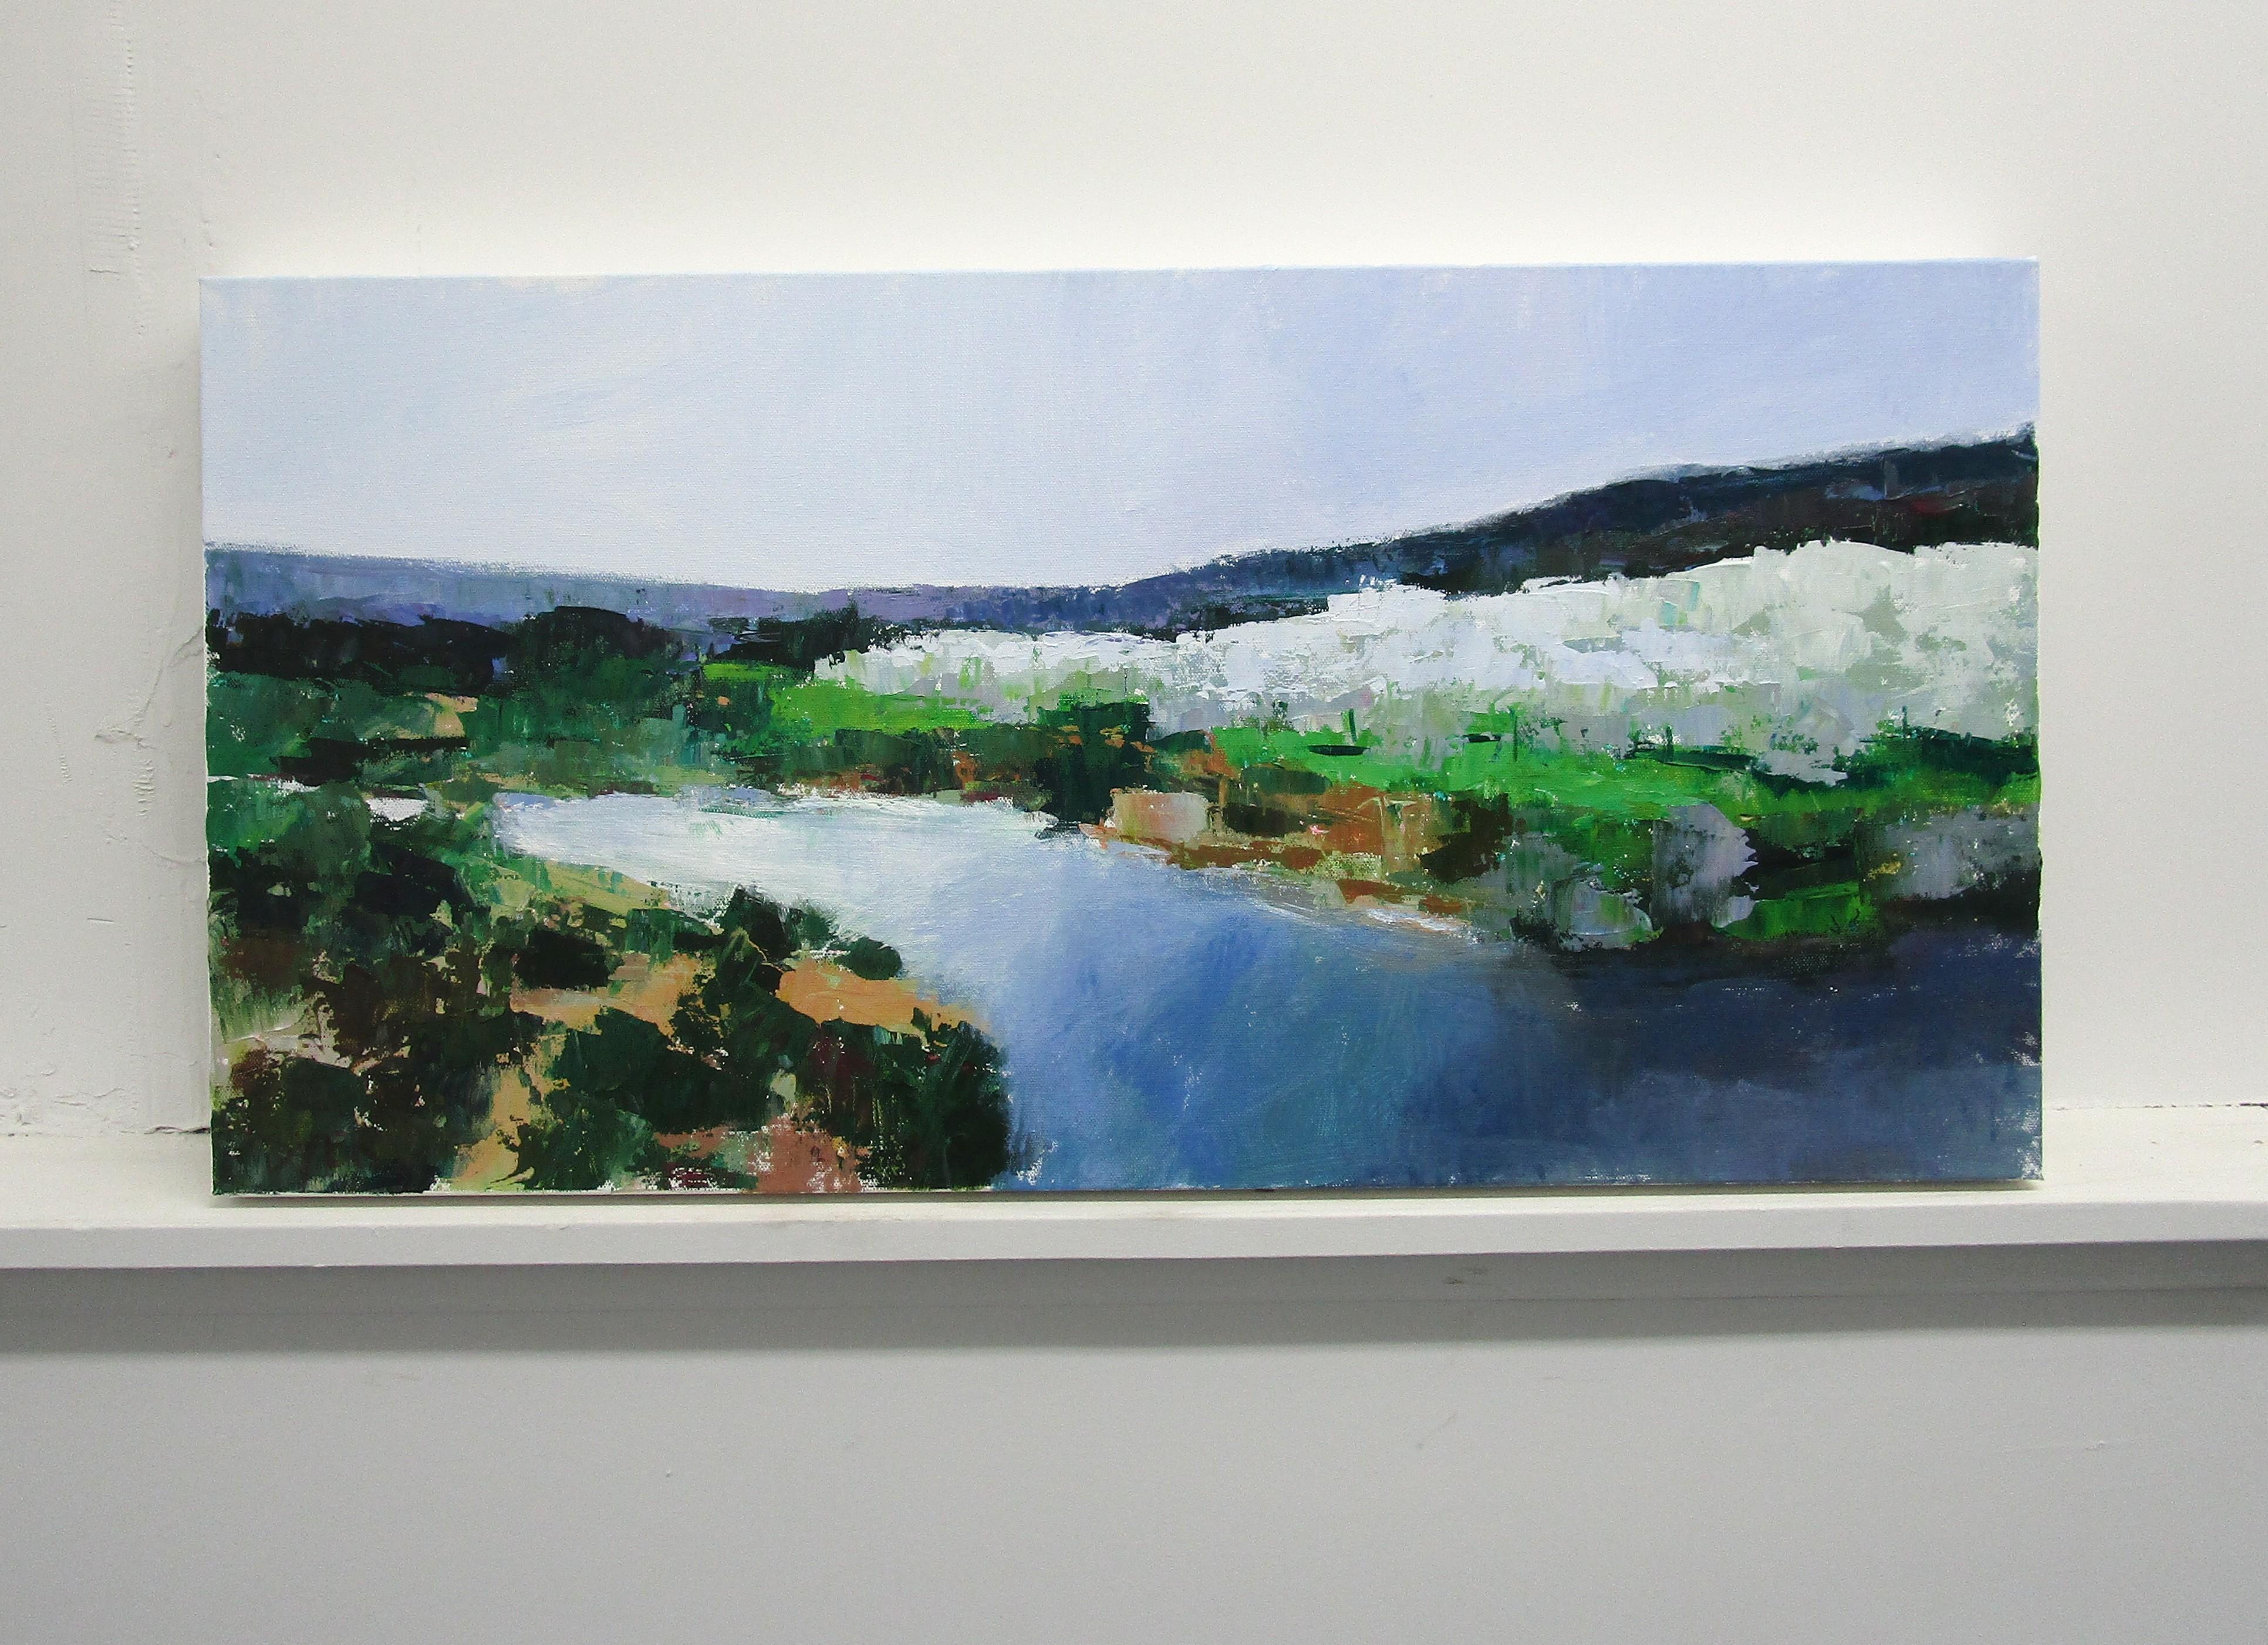 <p>Kommentare des Künstlers<br />Ein ruhiger Abend an einem Fluss in der Provence, Frankreich, mit Blick auf einen Olivenhain. Der neutrale Himmel und das kühle blaue Wasser bringen die grüne Landschaft zur Geltung. Tolle Details mit sparsamen